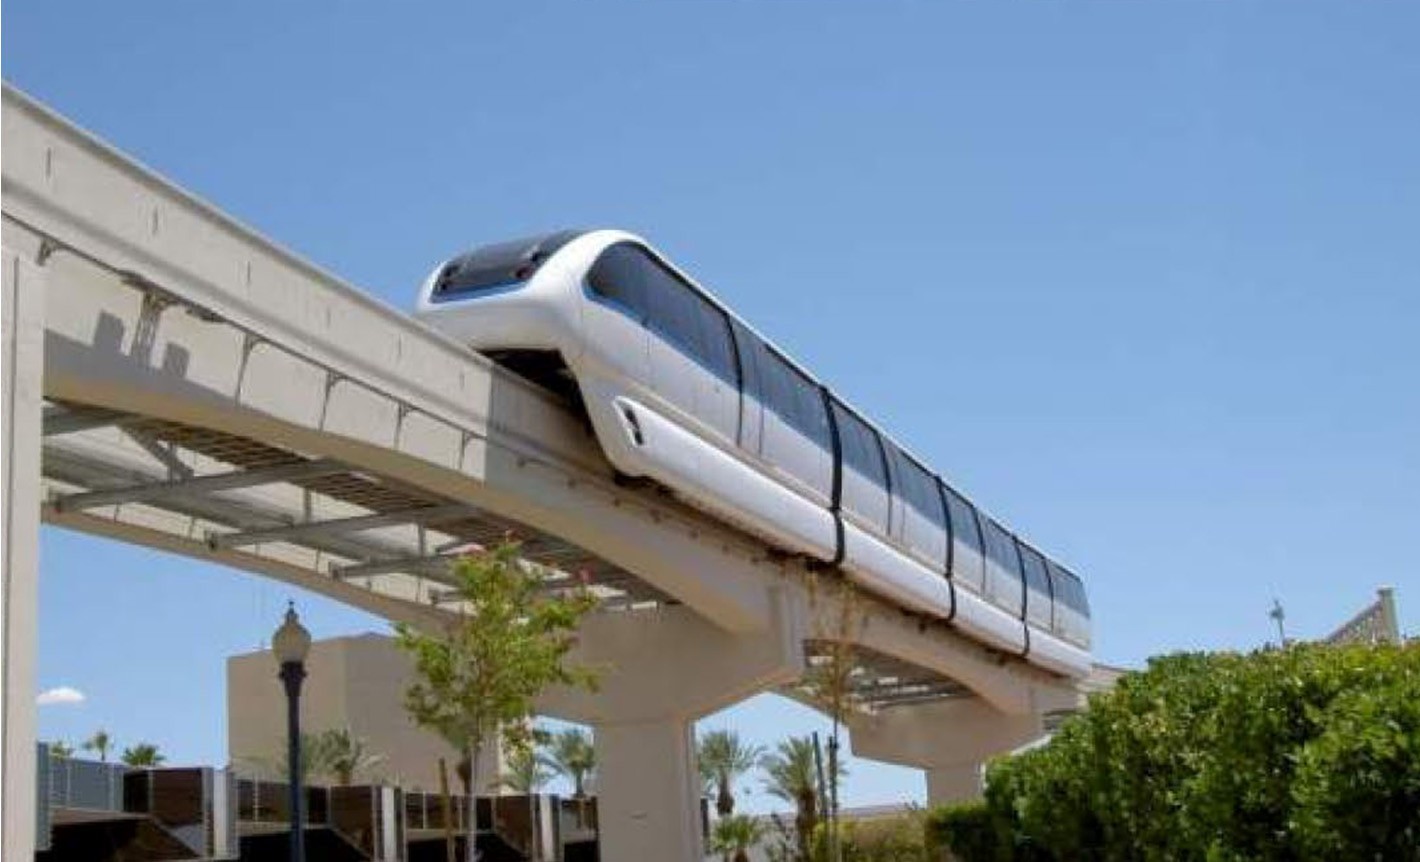 吉林市跨座式单轨交通系统规划启动